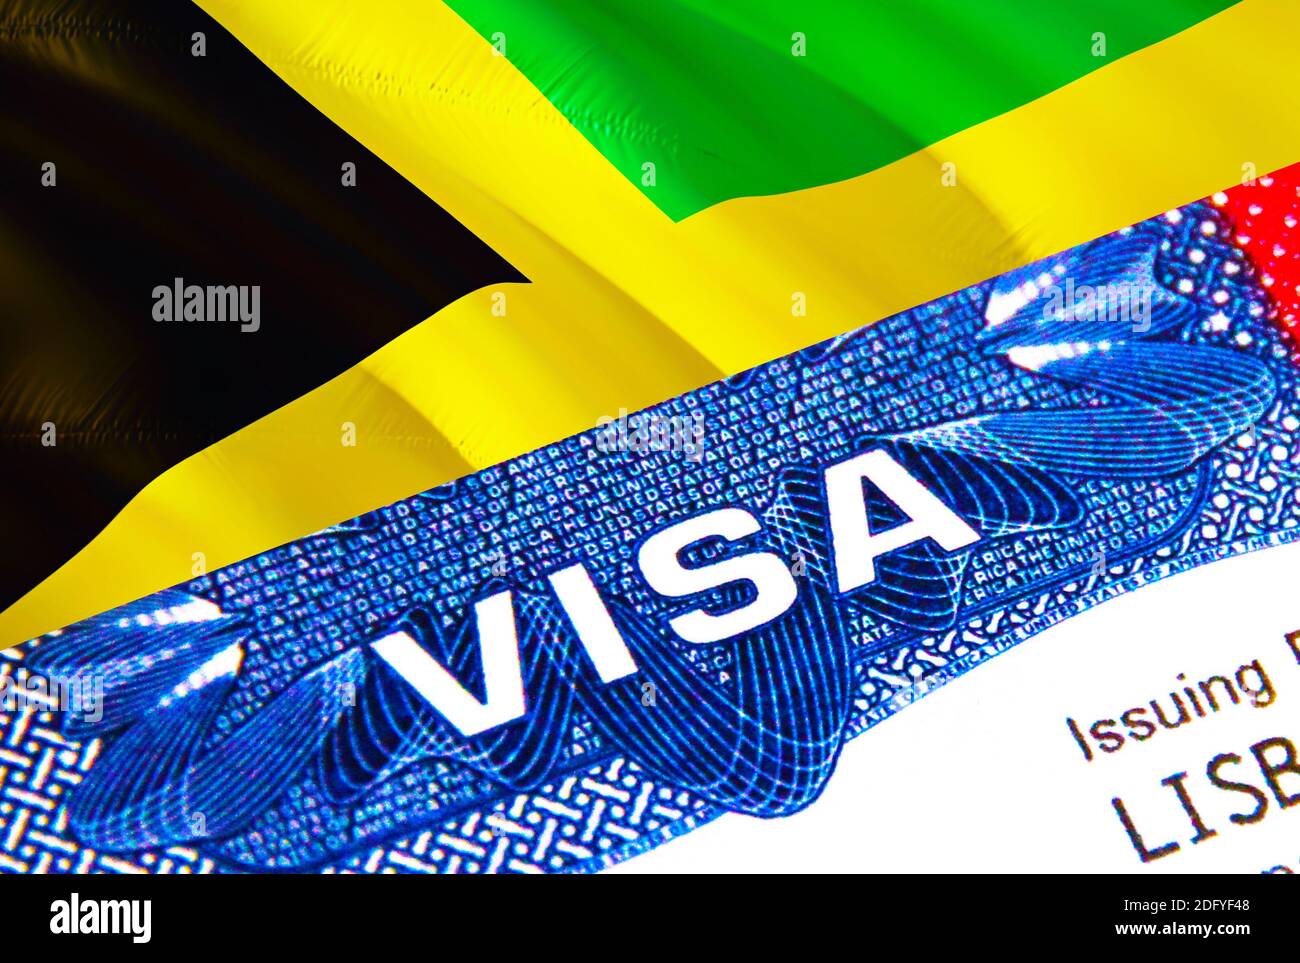 Jamaïque Visa en passeport. Visa d'immigration des États-Unis pour les  citoyens de la Jamaïque se concentrant sur le mot VISA. Voyage visa Jamaïque  en identification nationale gros-up,3D Photo Stock - Alamy